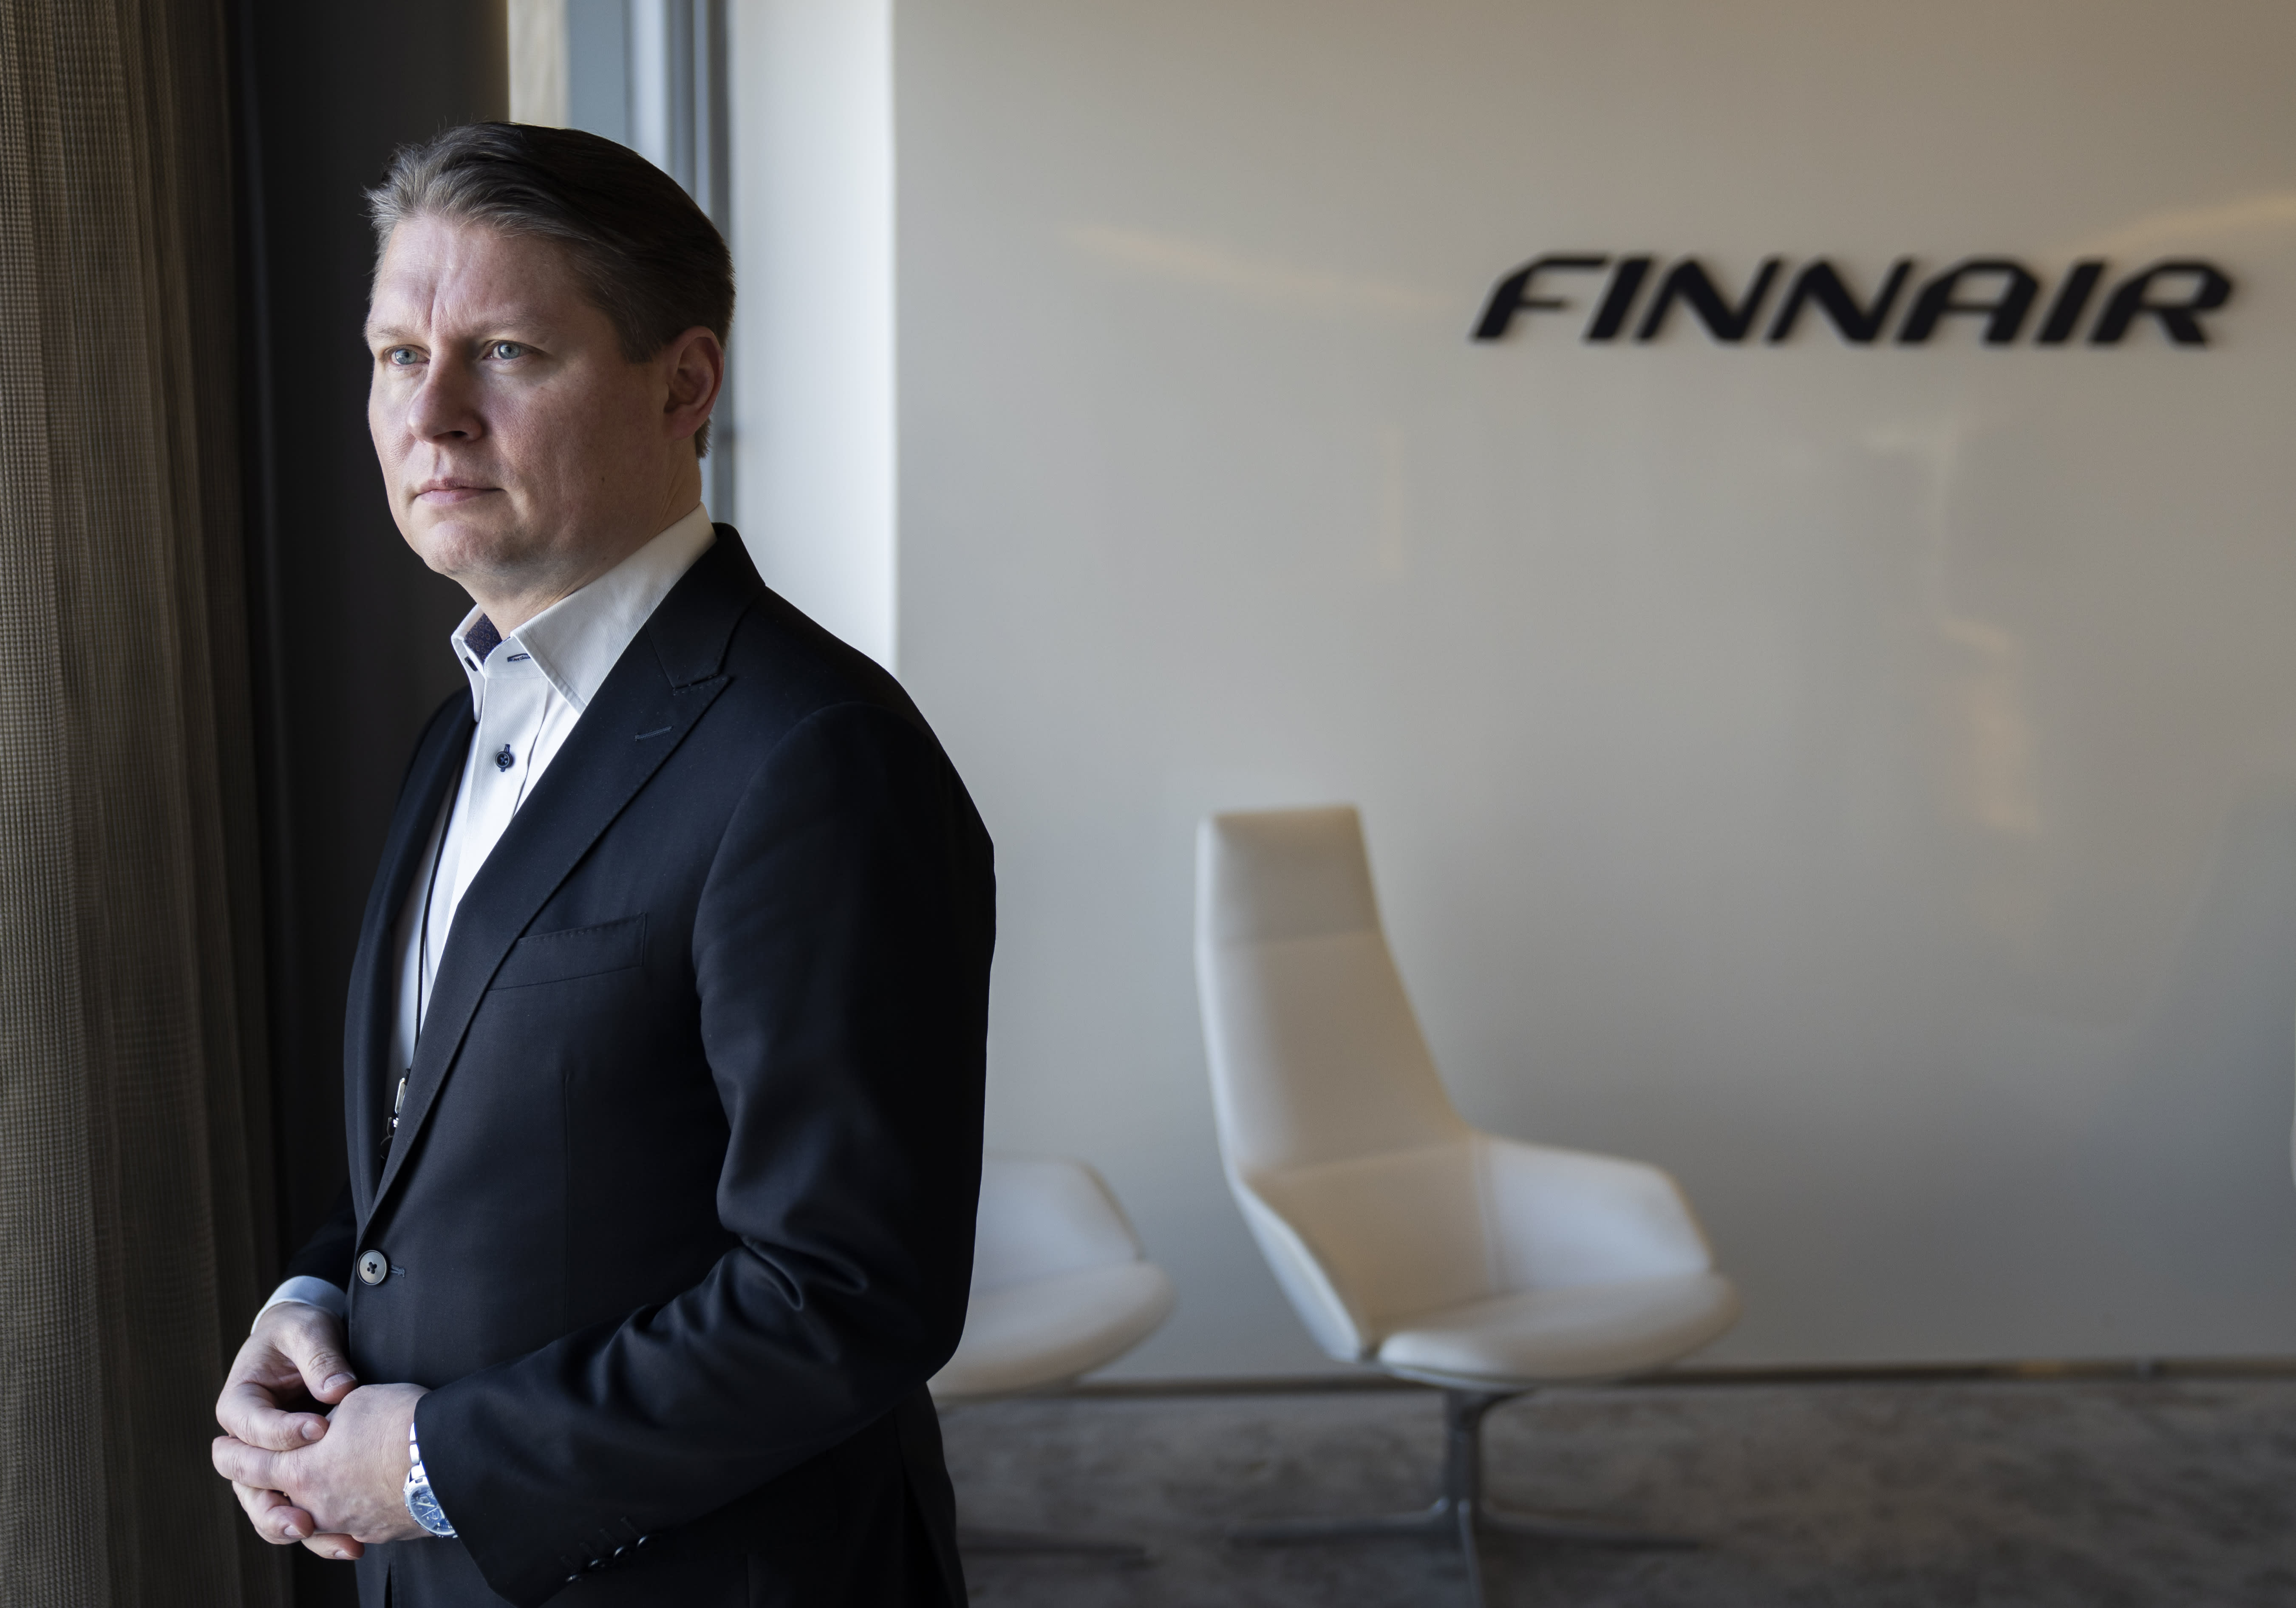 Finnair’s profitability plan threatens 450 cabin crew jobs